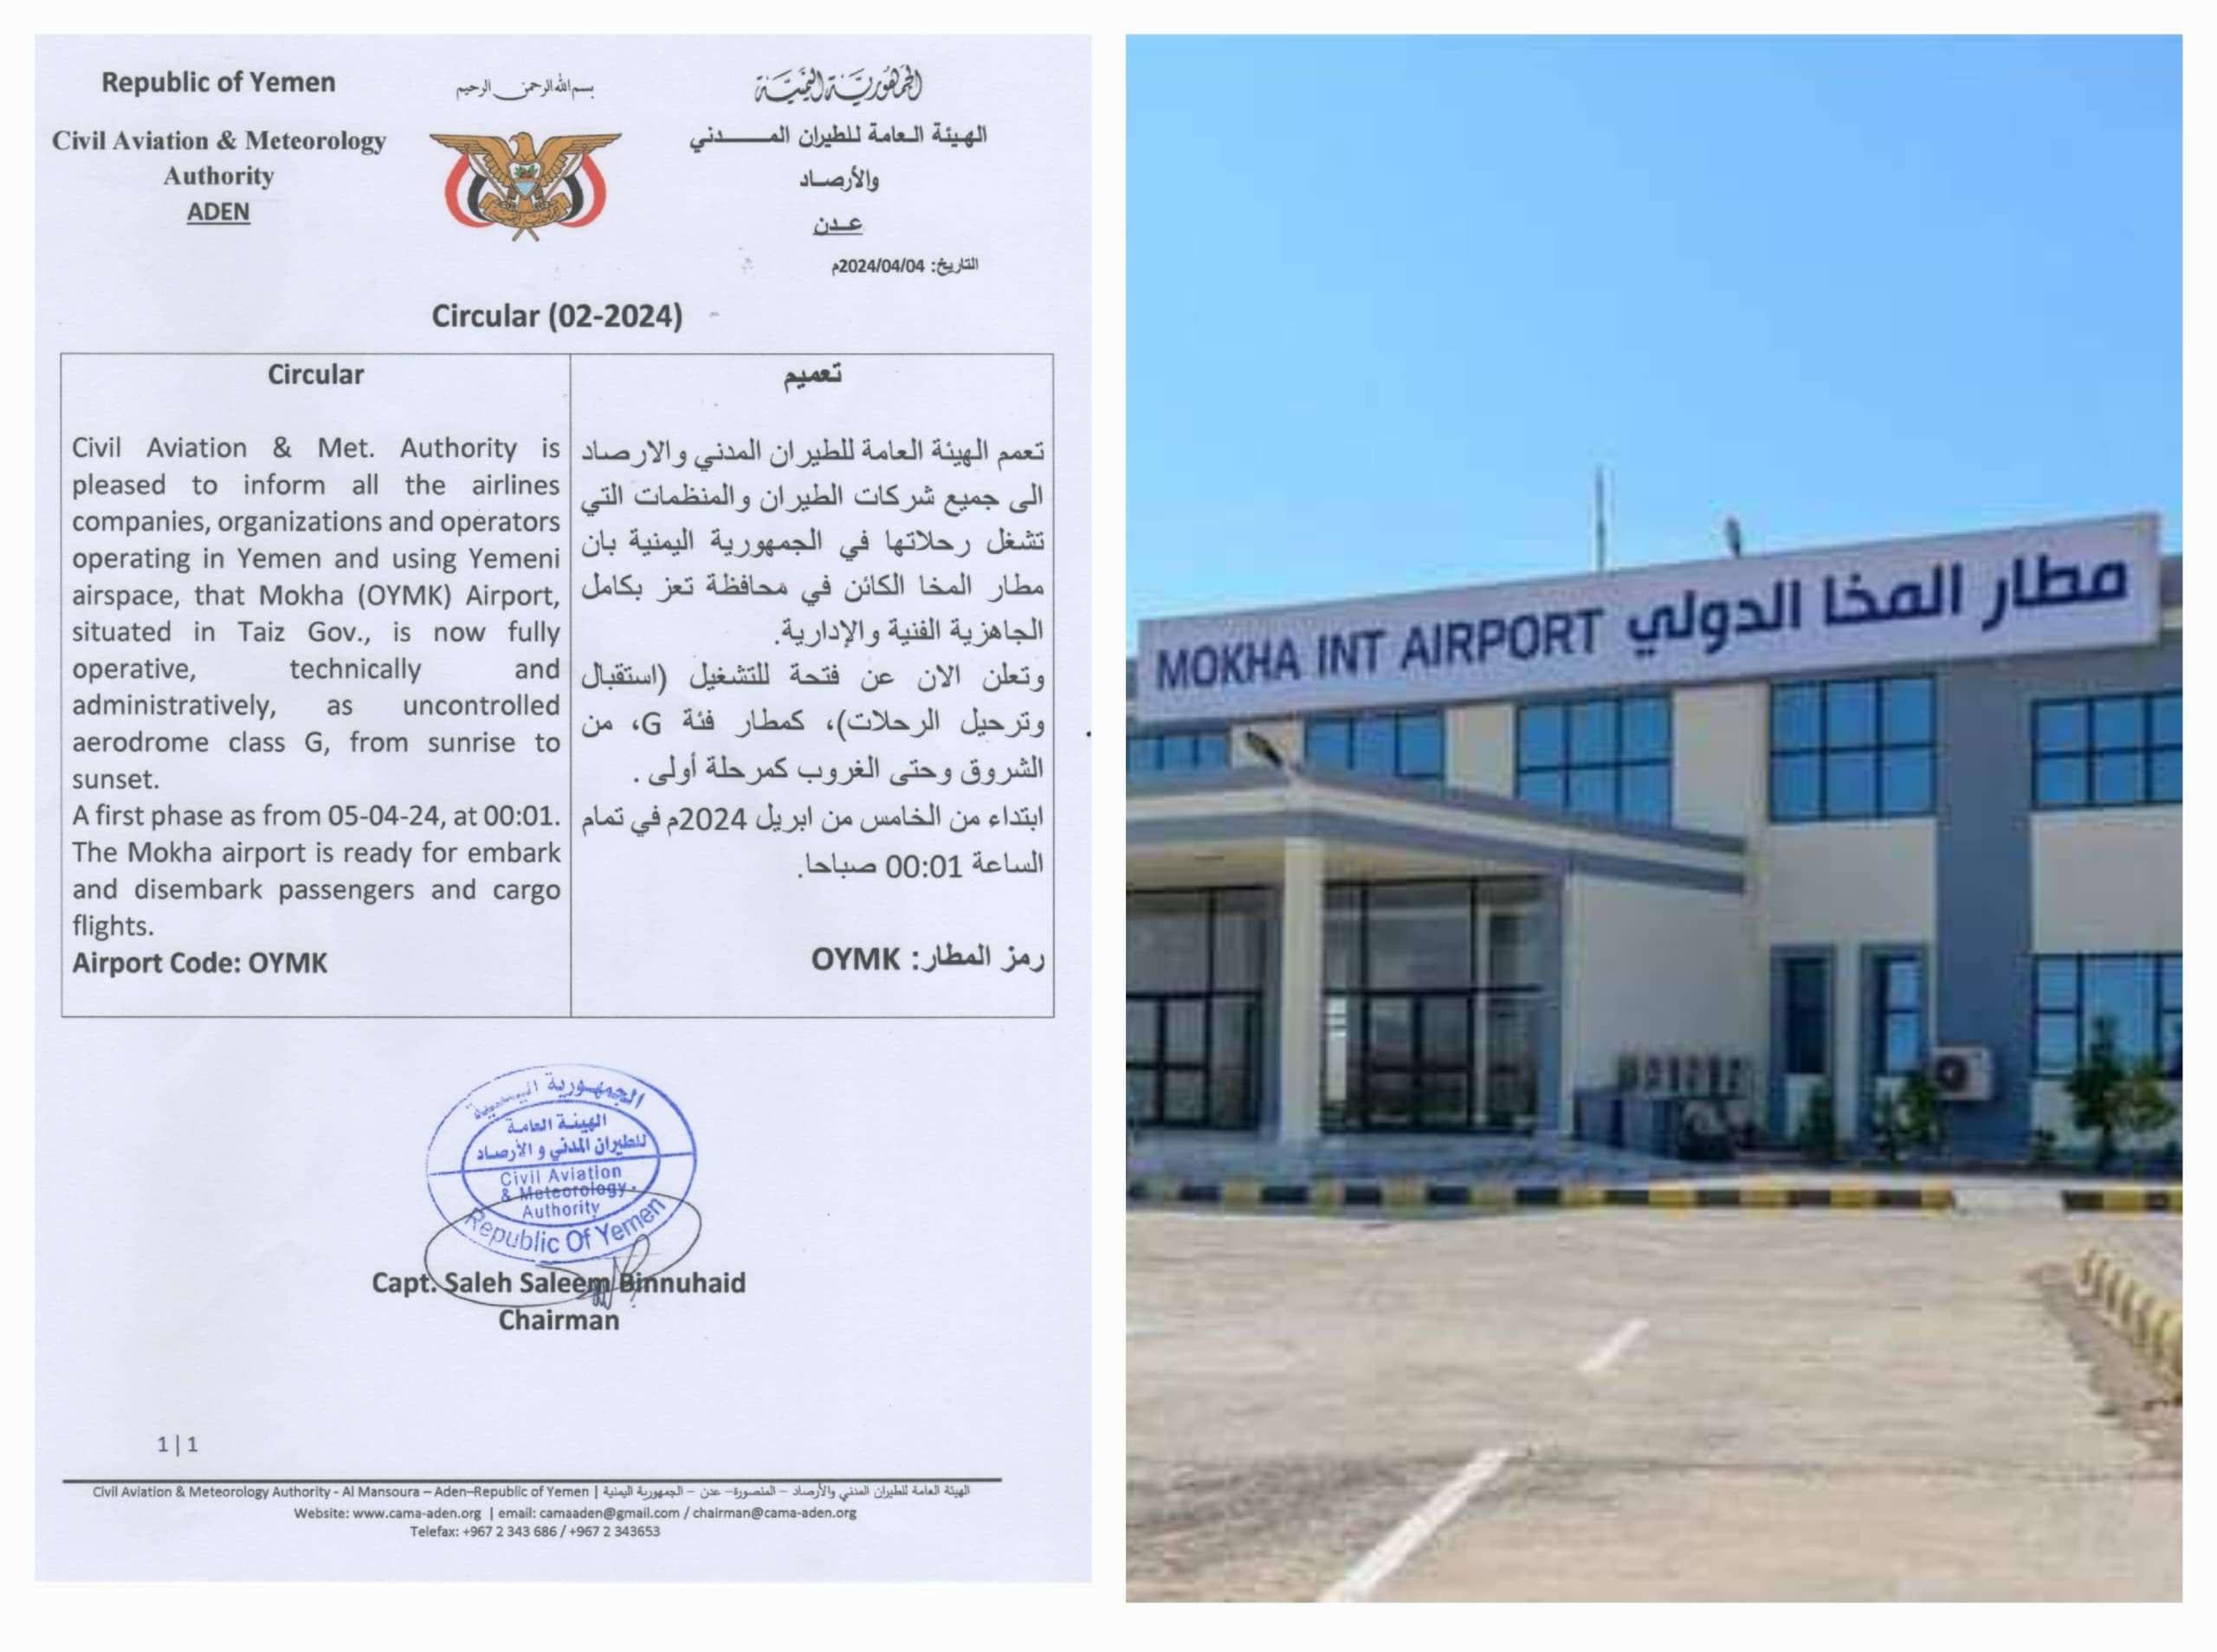 الإعلان رسميا عن فتح وتشغيل مطار المخا أمام الرحلات من يوم غد الجمعة